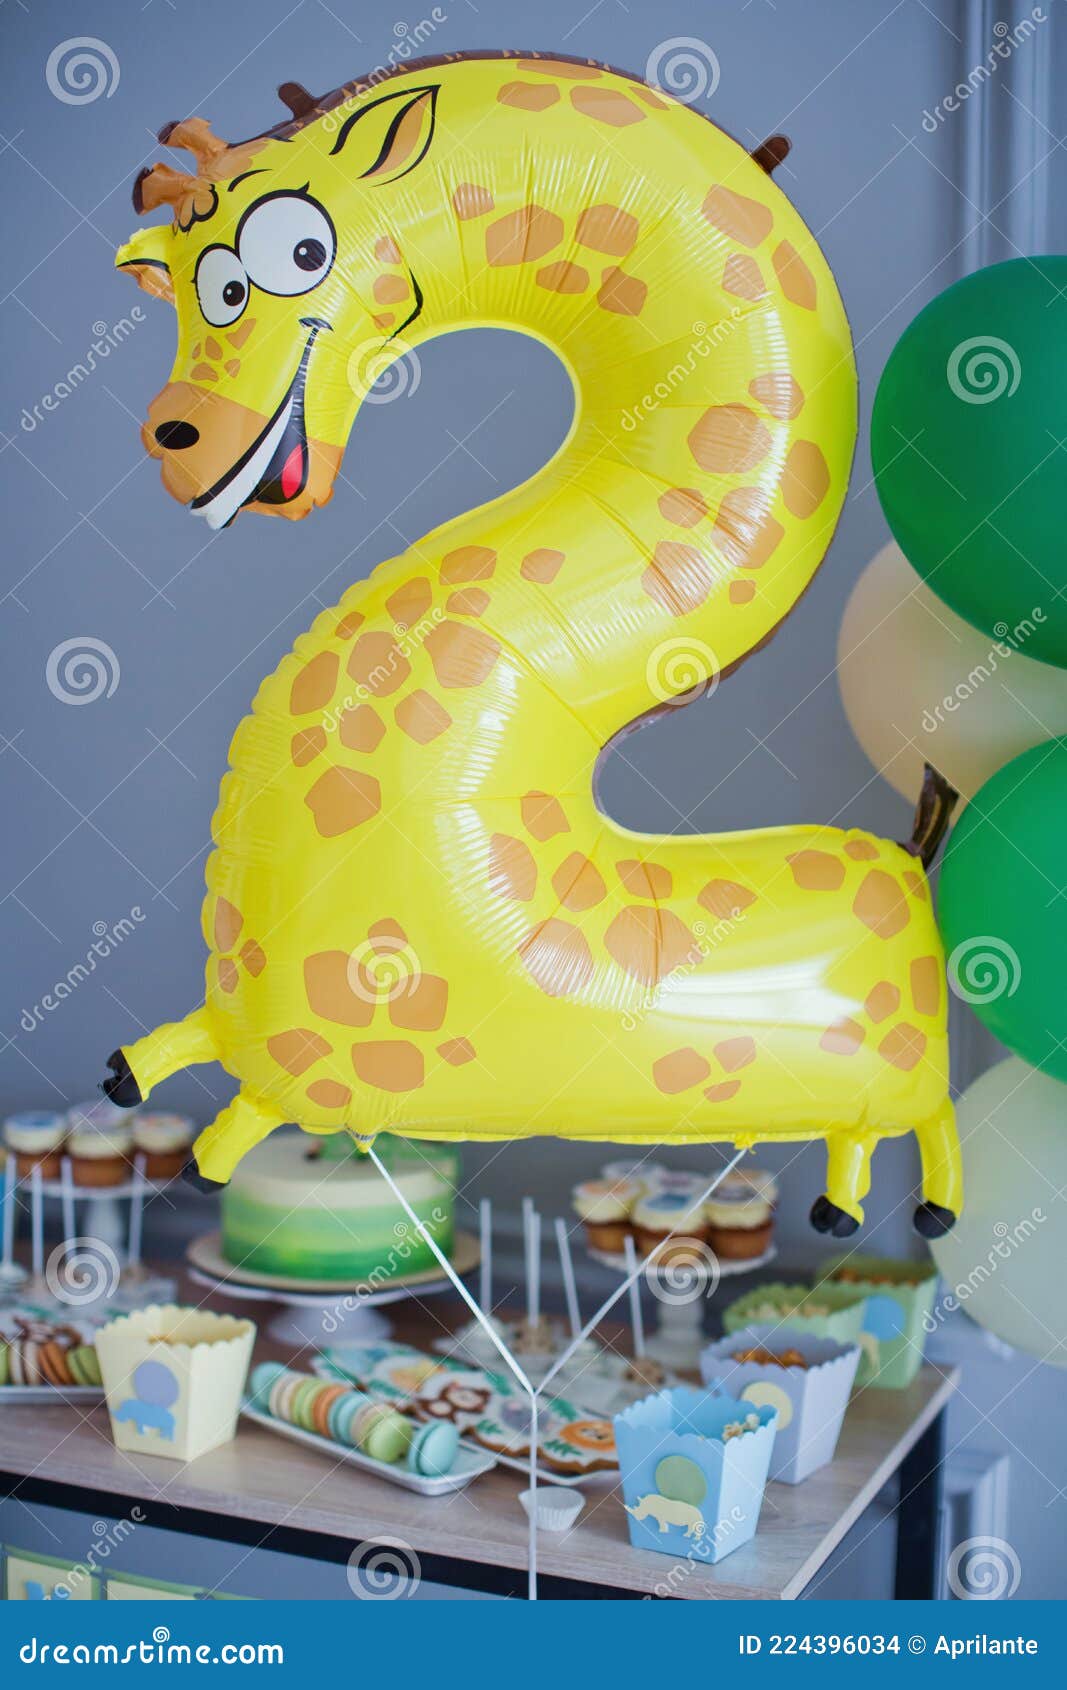 Decoración de fiesta infantil con globos de animales de la selva